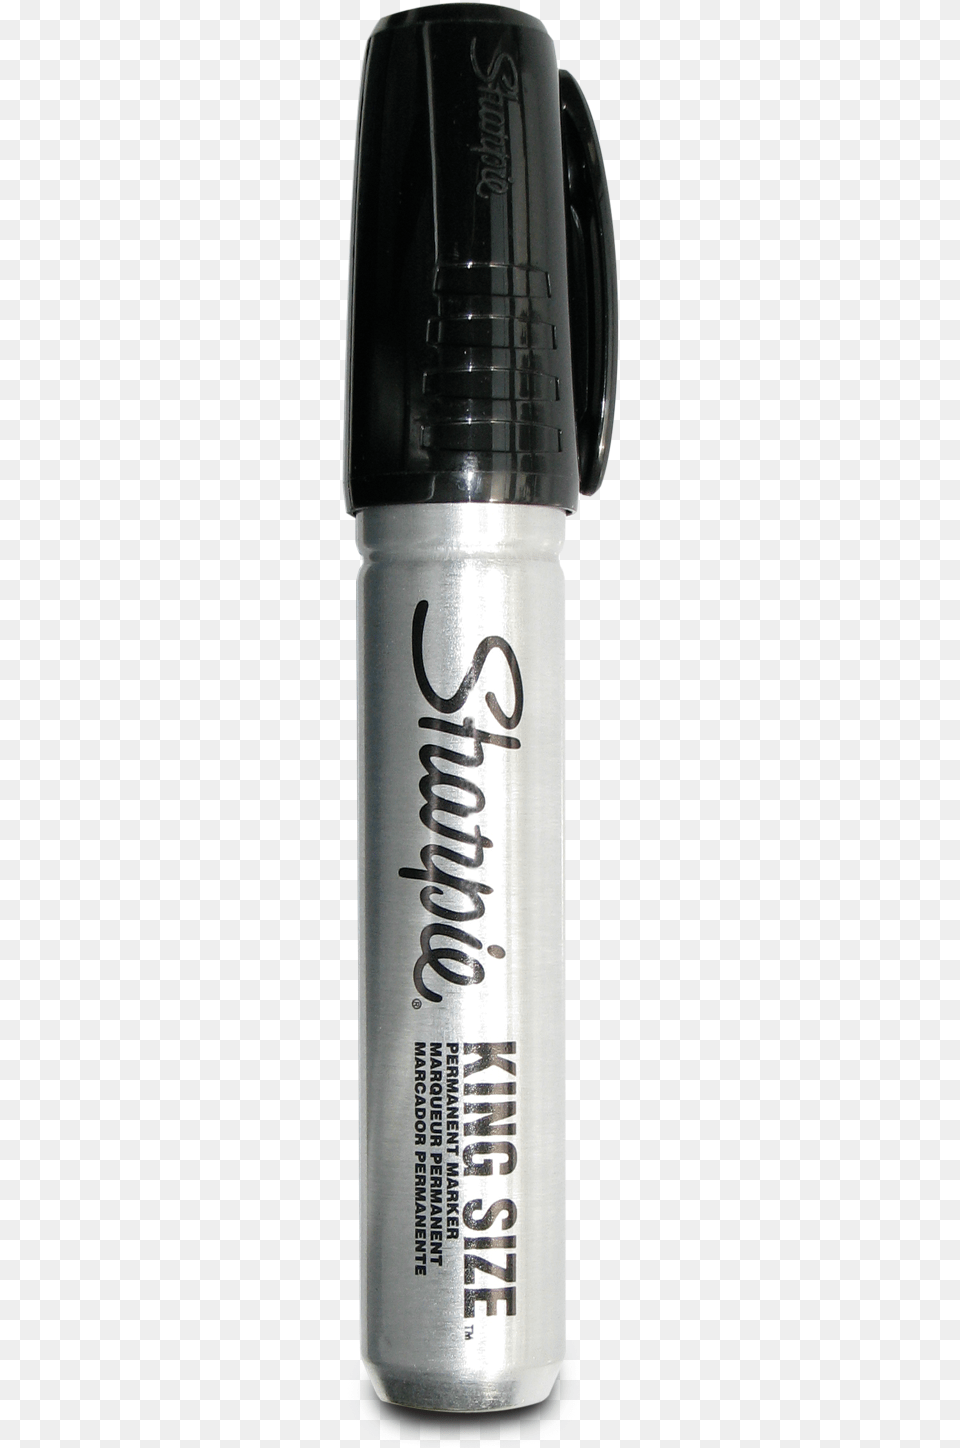 Sharpie Pro Chisel King Marker Sharpie, Bottle Png Image